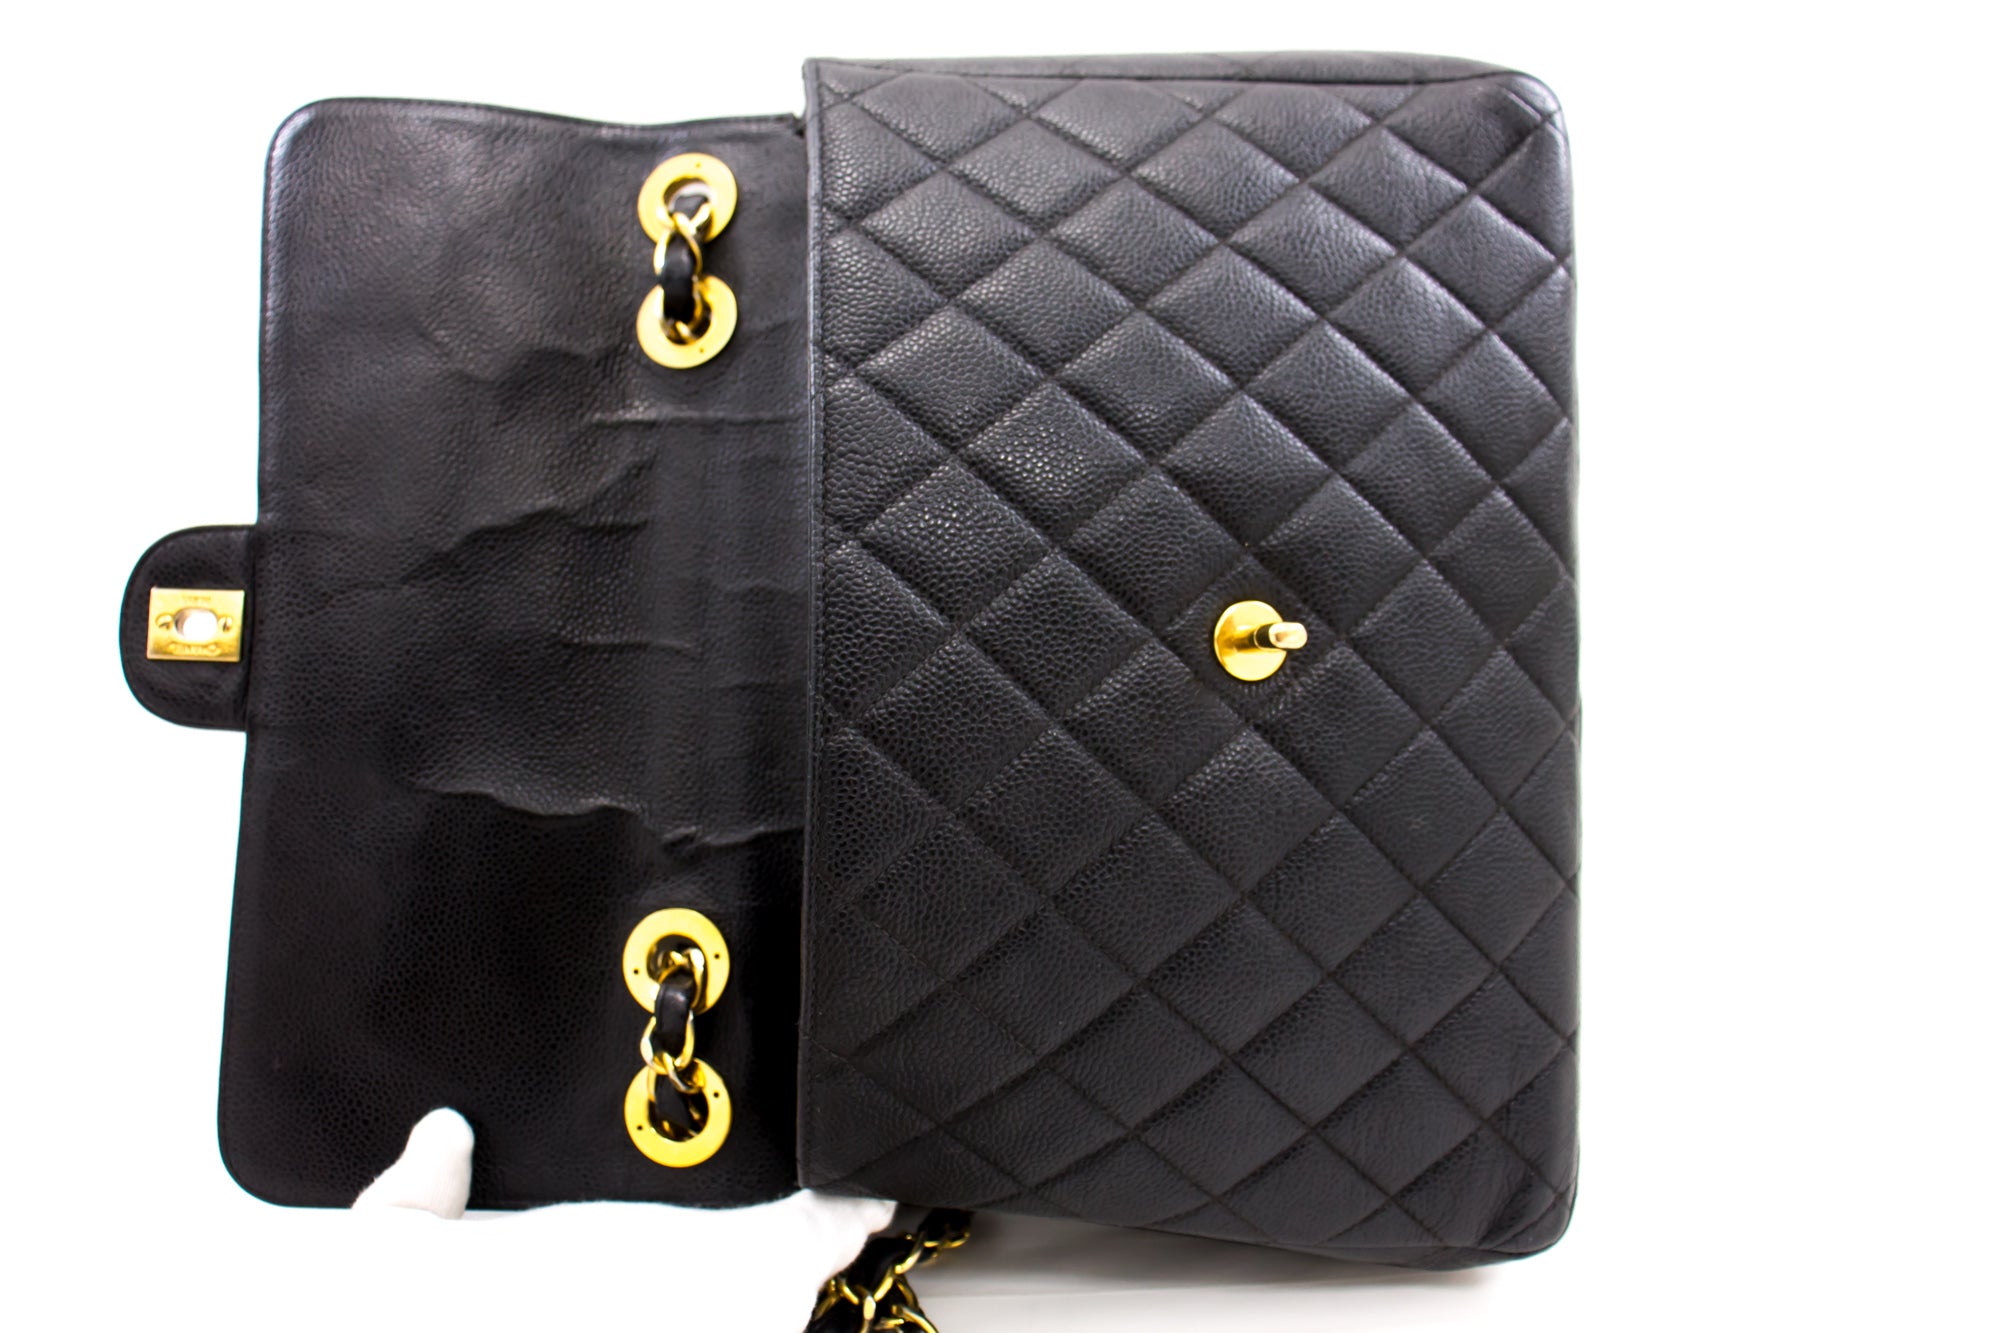 Chanel Jumbo Caviar Shoulder Bag